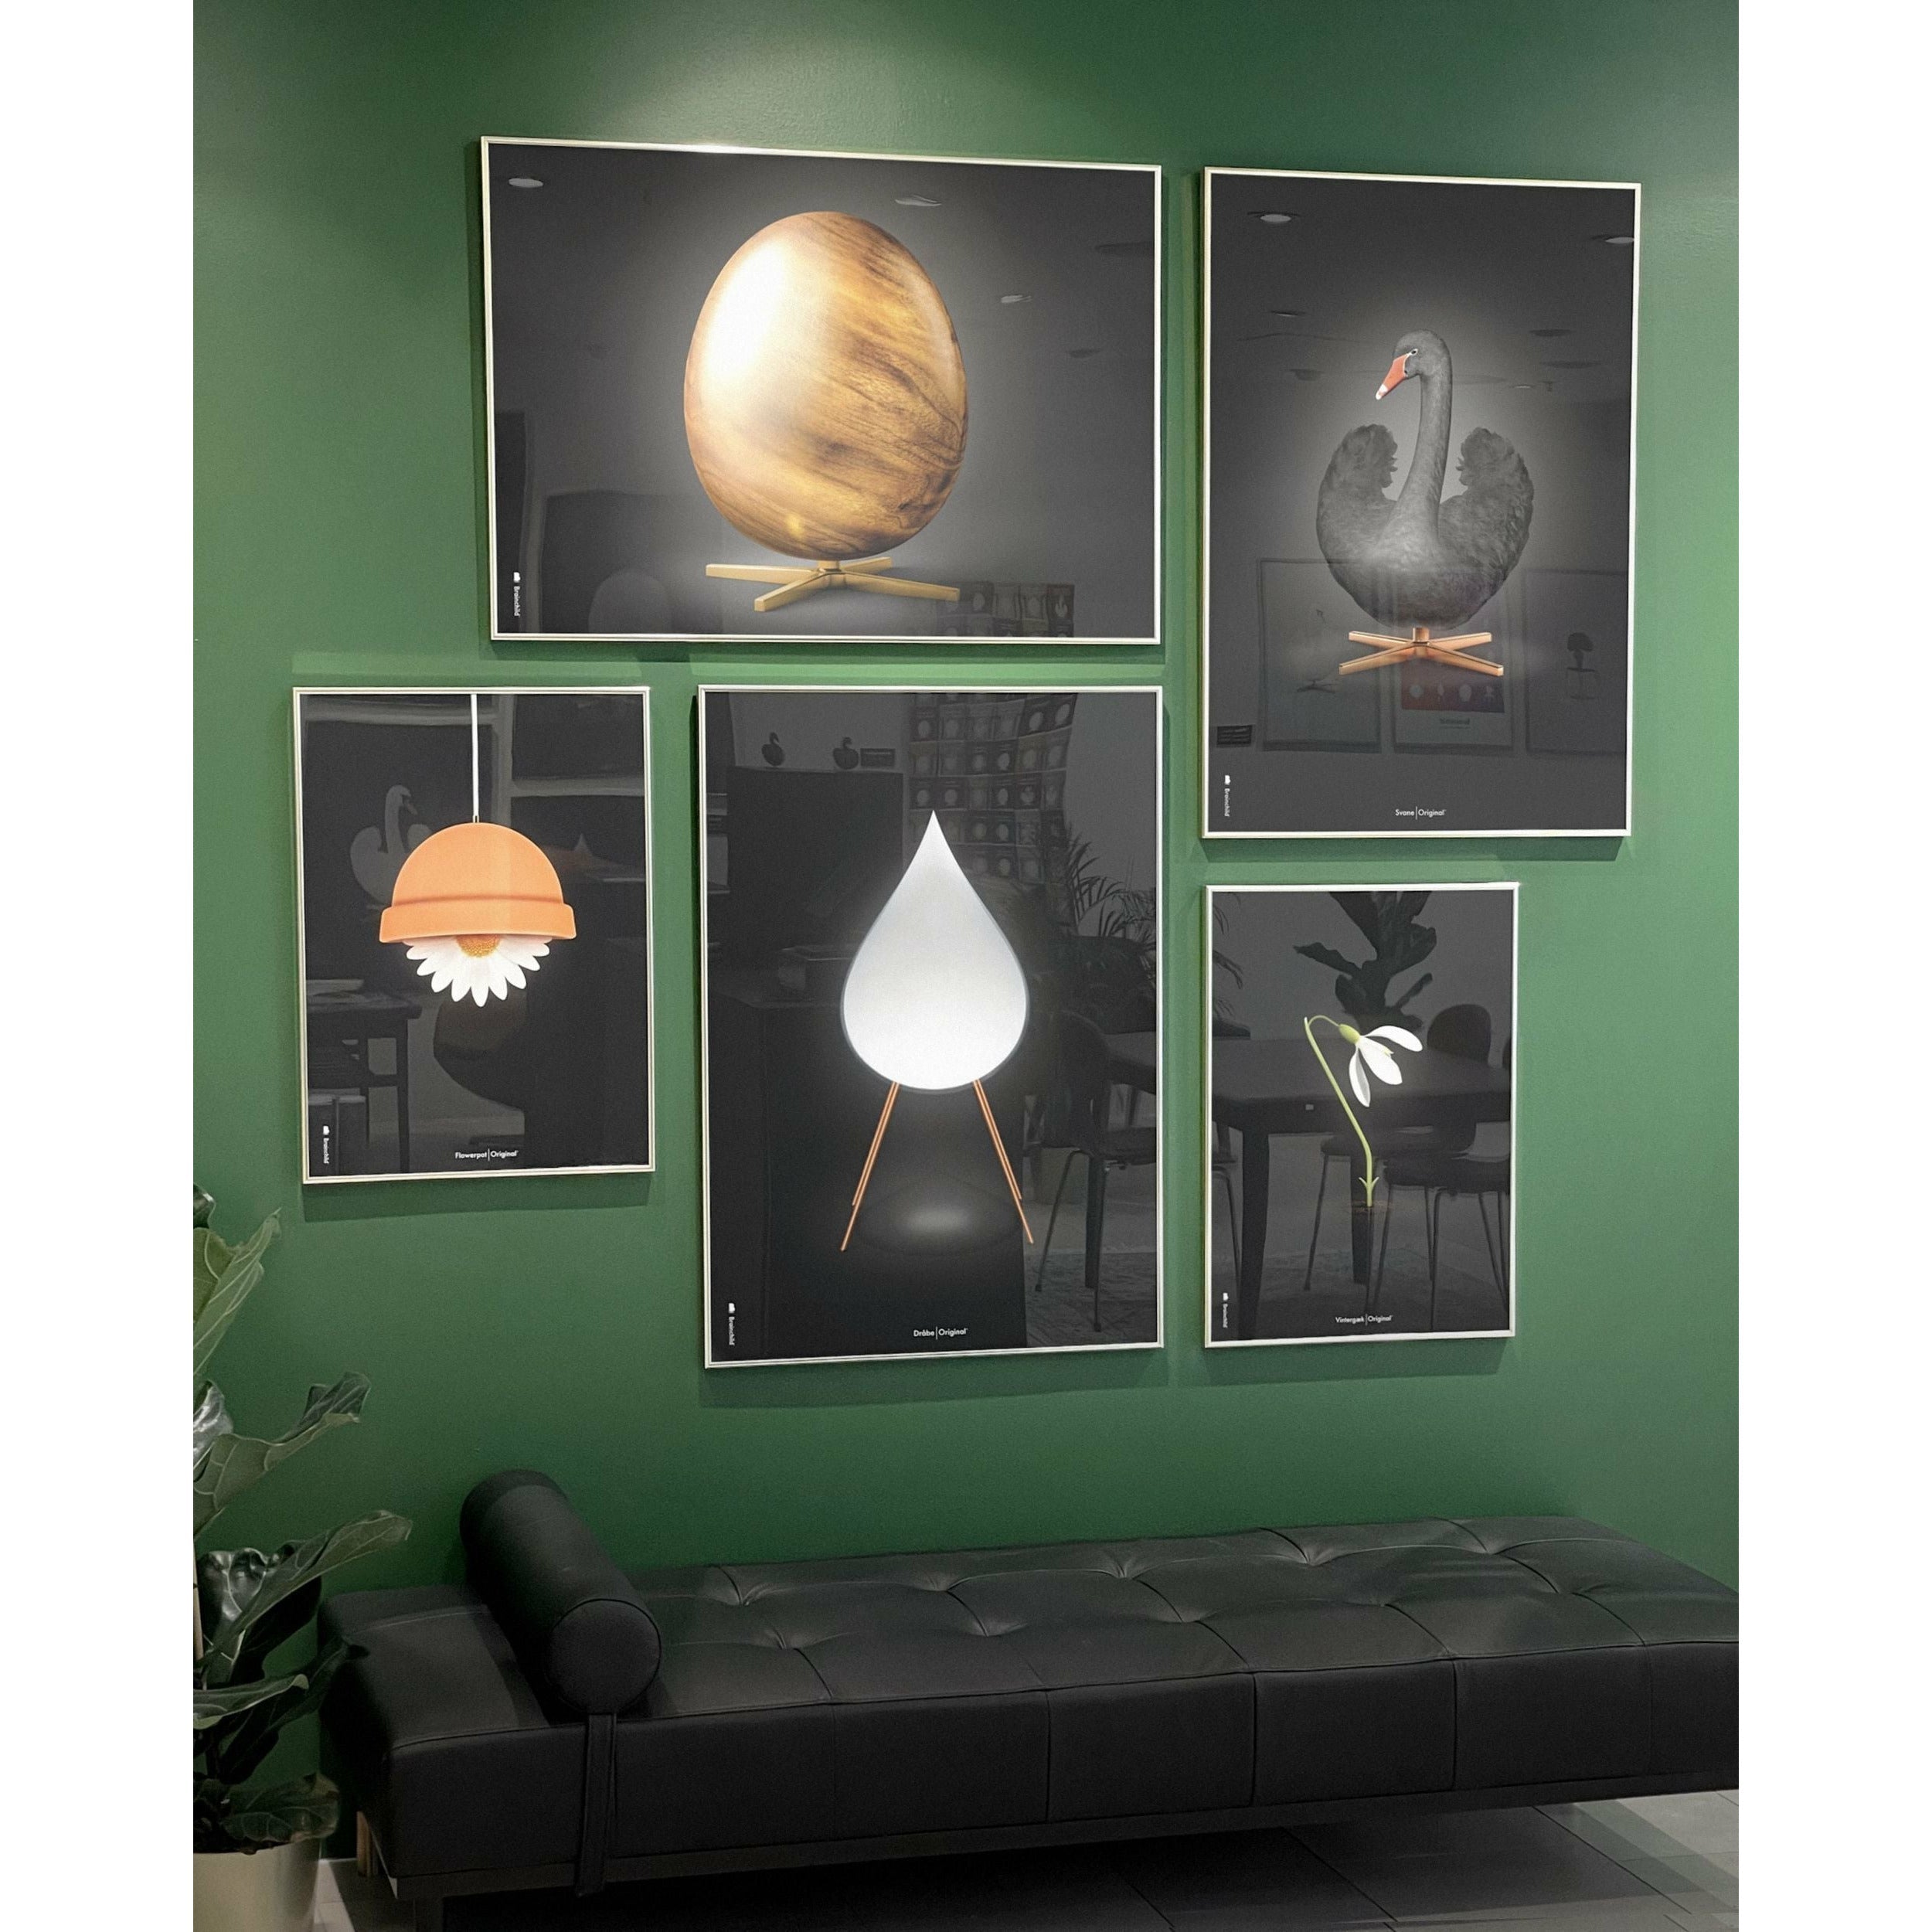 Plakat w formacie jaja pomysłu, rama wykonana z ciemnego drewna 70x100 cm, czarny